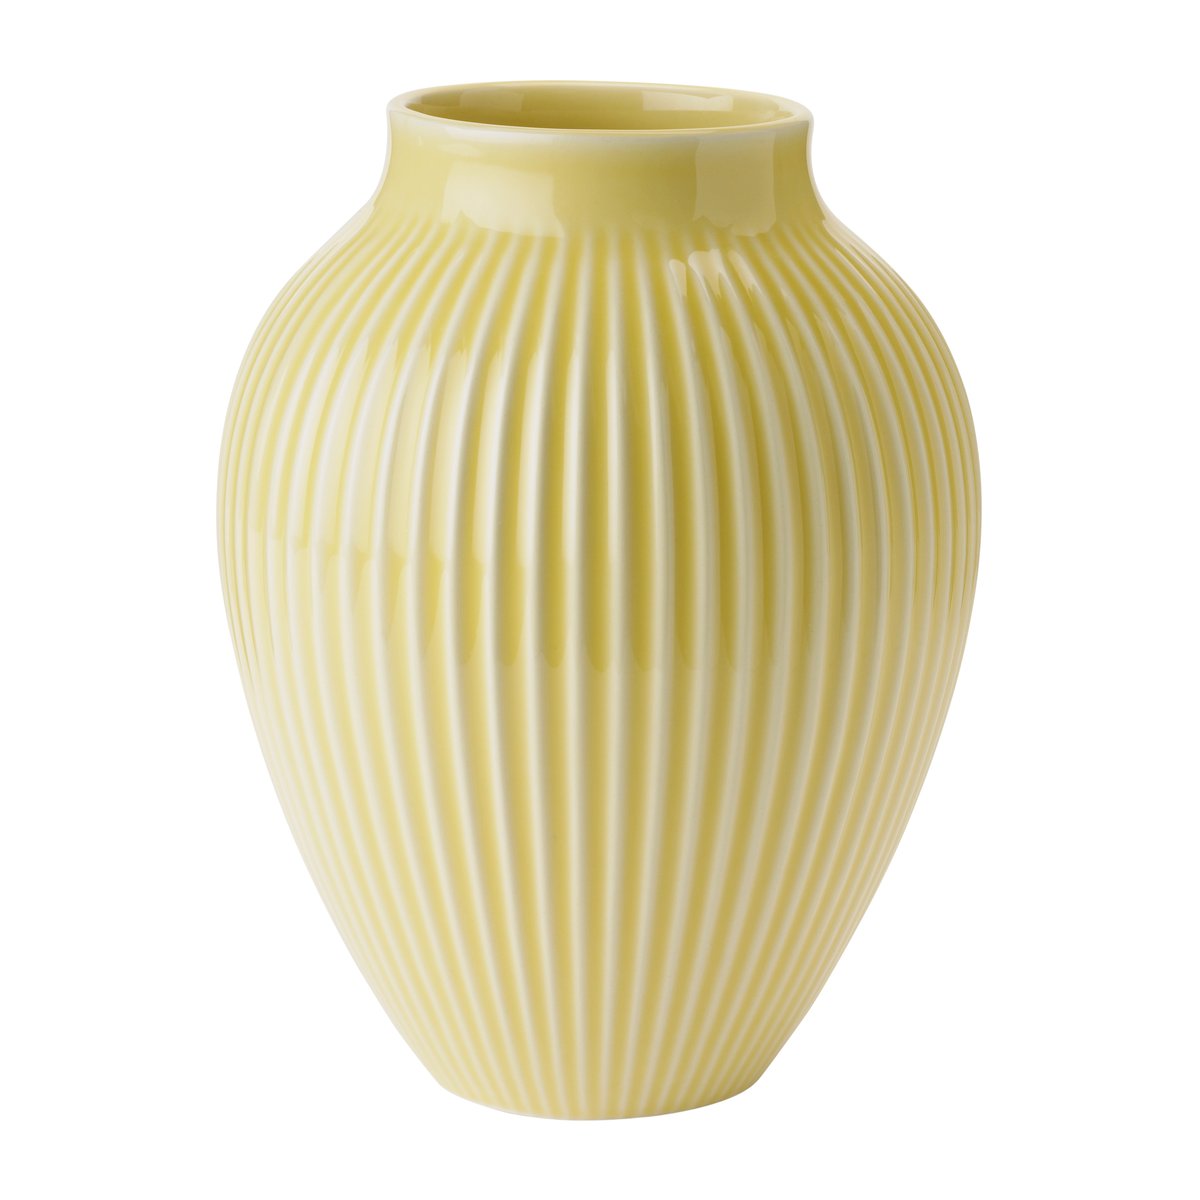 Bilde av Knabstrup Keramik Knabstrup vase riller 20 cm Gul